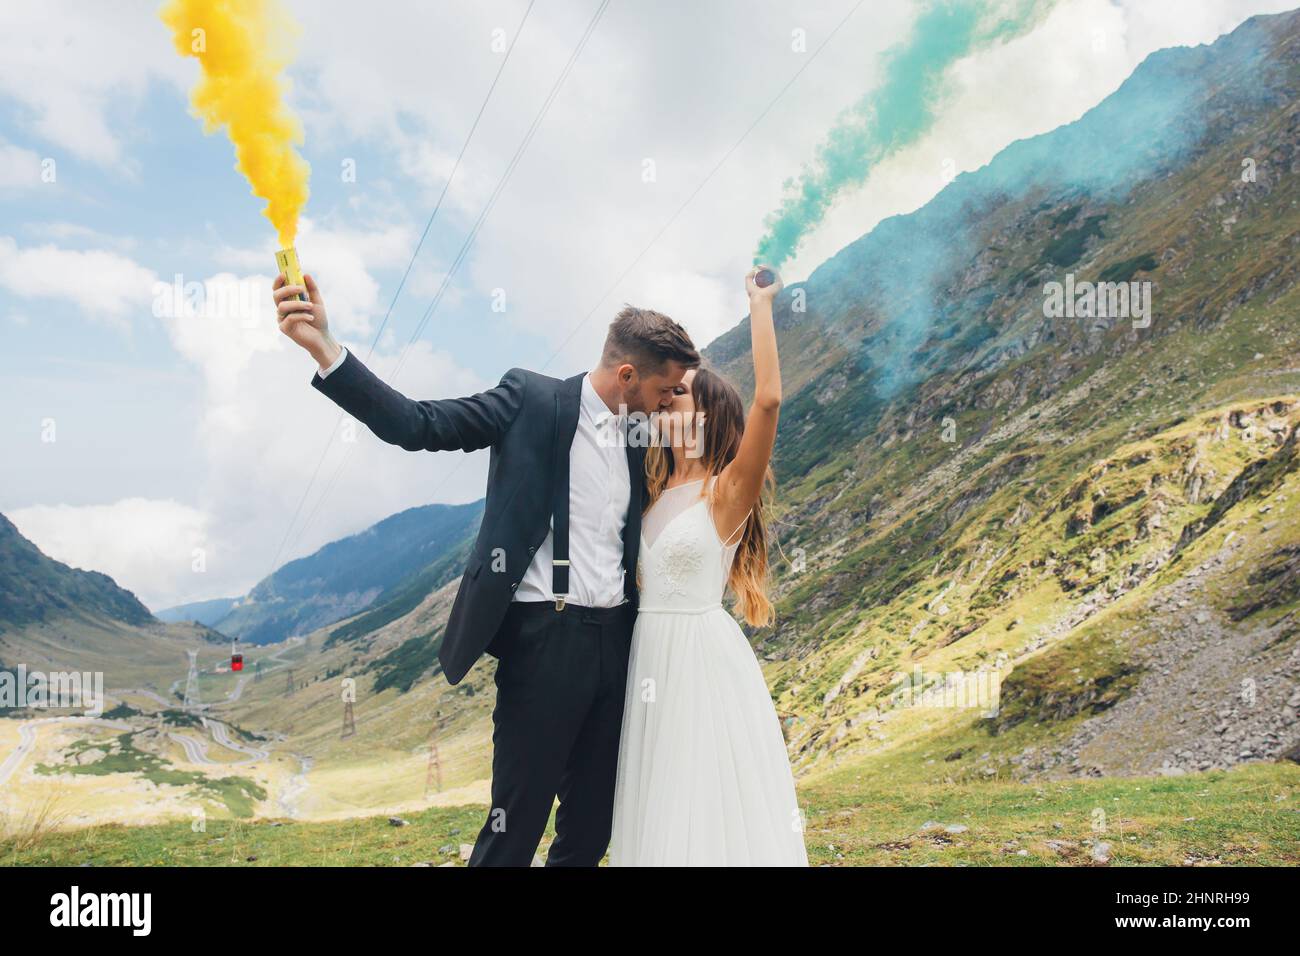 Ritratto di un sposo novellino con il fumo giallo e blu nelle mani che si posa mentre bacia nella montagna. Paesaggio naturale. Giorno del matrimonio. Foto Stock